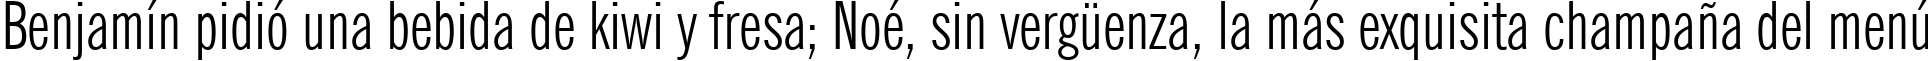 Пример написания шрифтом News Gothic Extra Condensed BT текста на испанском